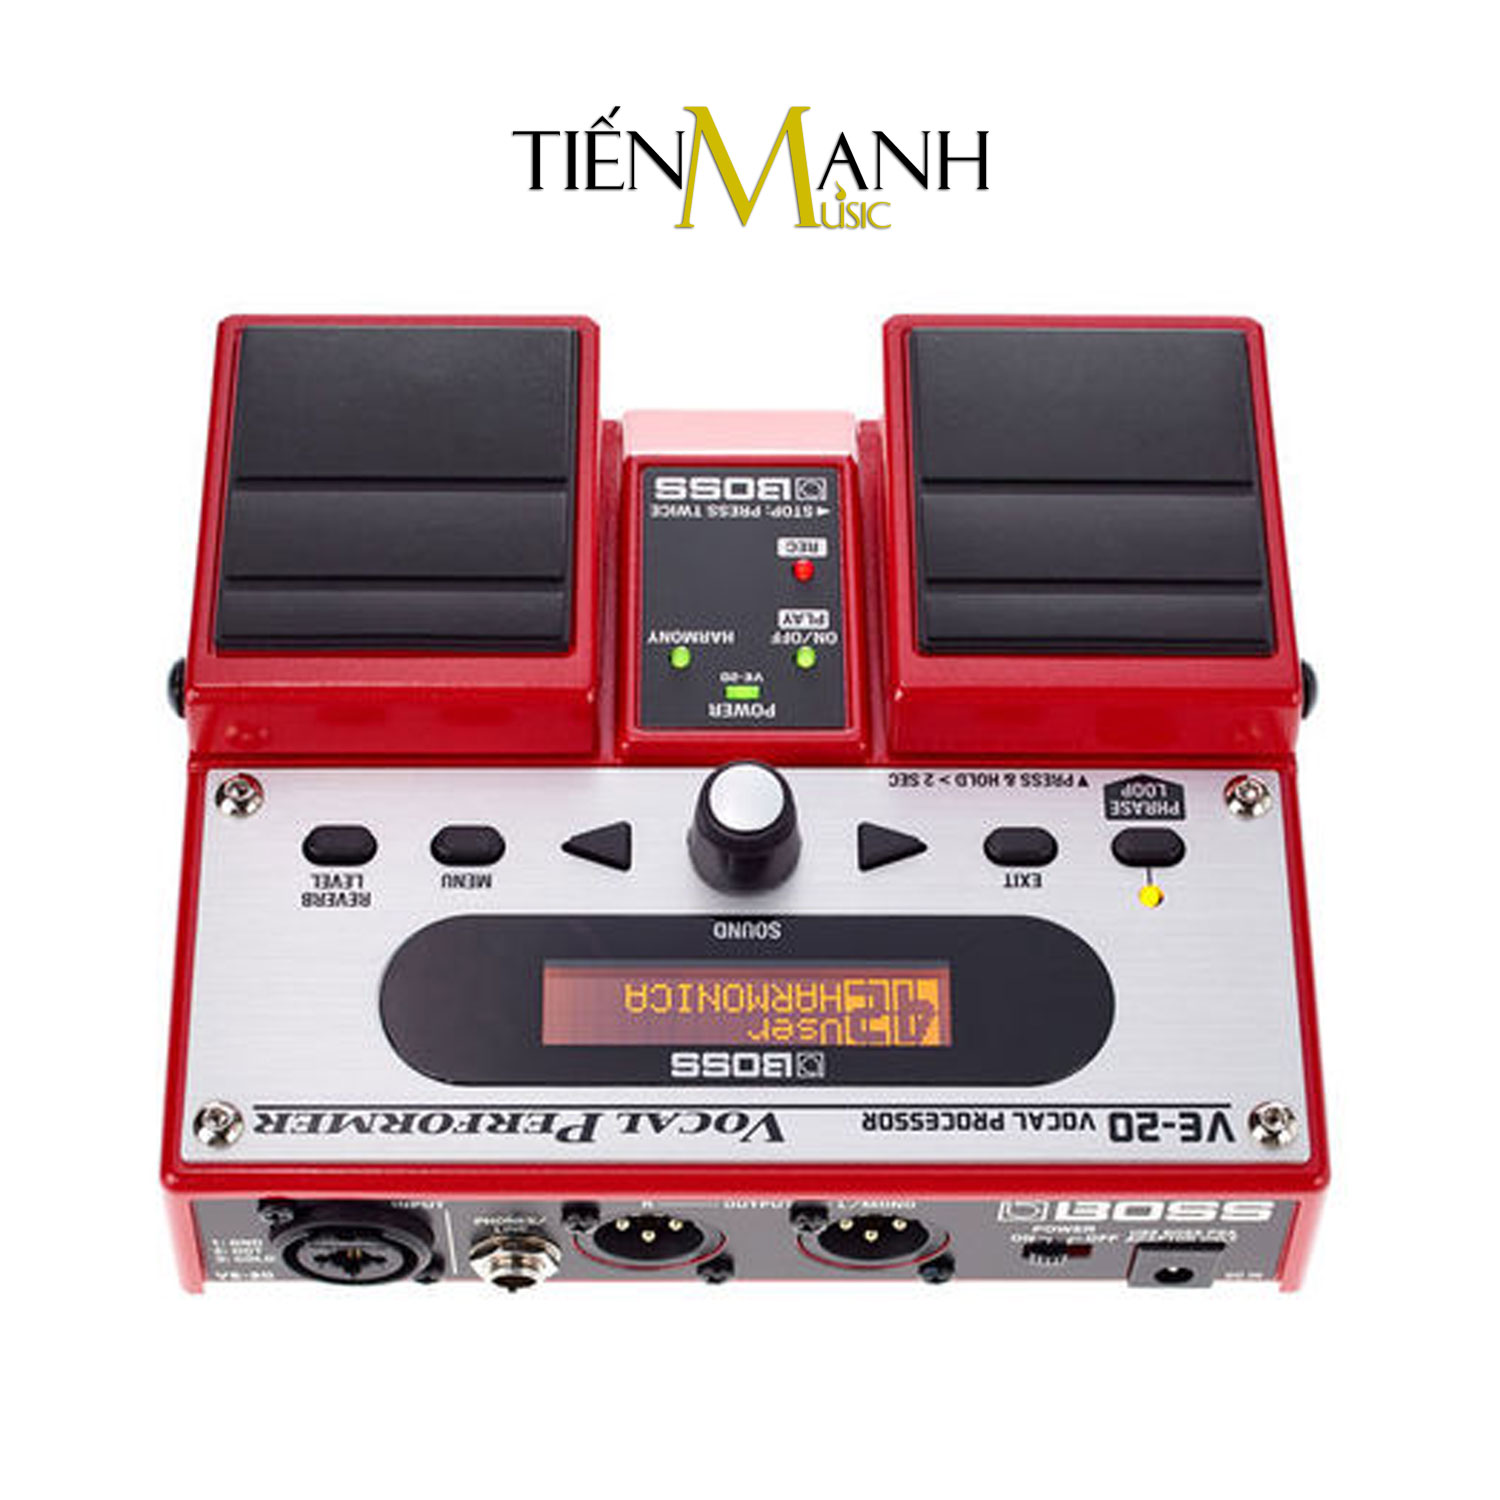 Boss VE-20 Vocal Processor Stompbox Tạo tiếng Bè, Vang vọng và chỉnh Tone, Giọng cho Ca sỹ - Bàn đạp Phơ Guitar Reverb and Delay Effects Processor VE20 Hàng Chính Hãng - Kèm Móng Gẩy DreamMaker